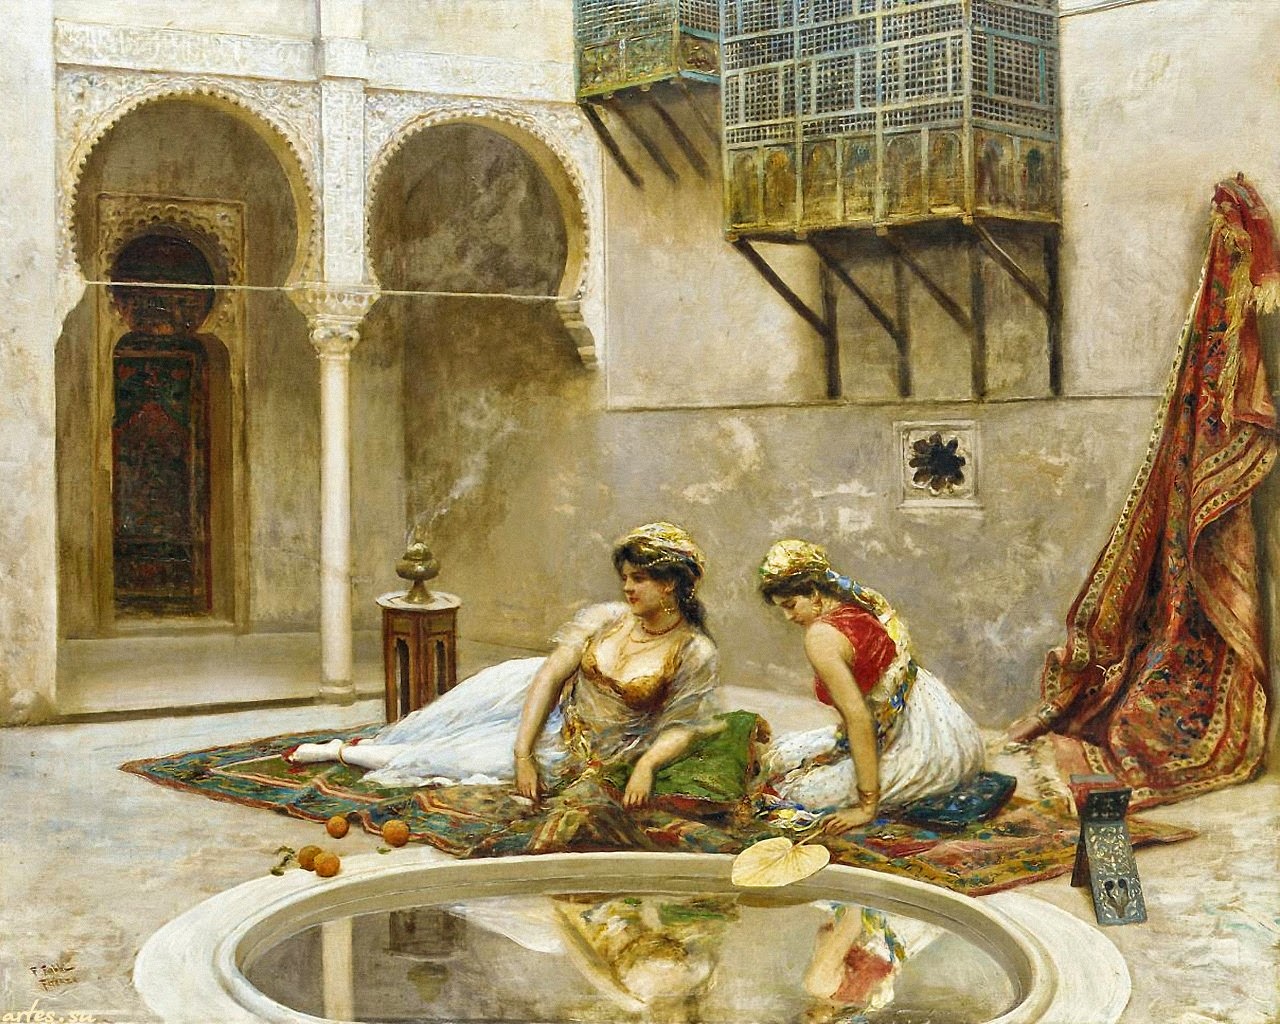 Fabio Fabbi (1861-1906) | An Italian Orientalist Painter